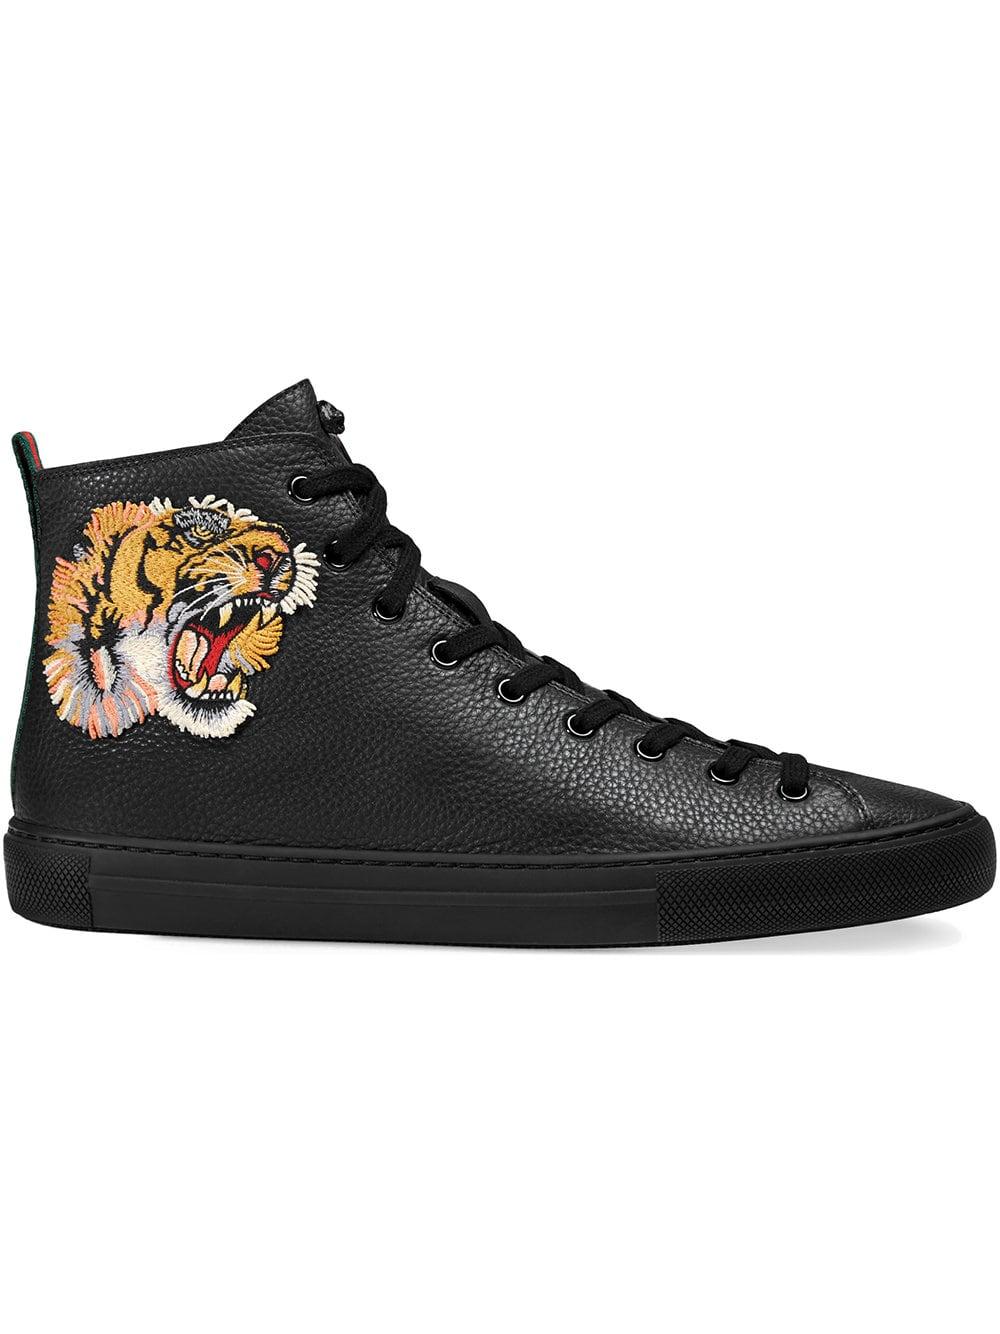 scarpe gucci alte tigre